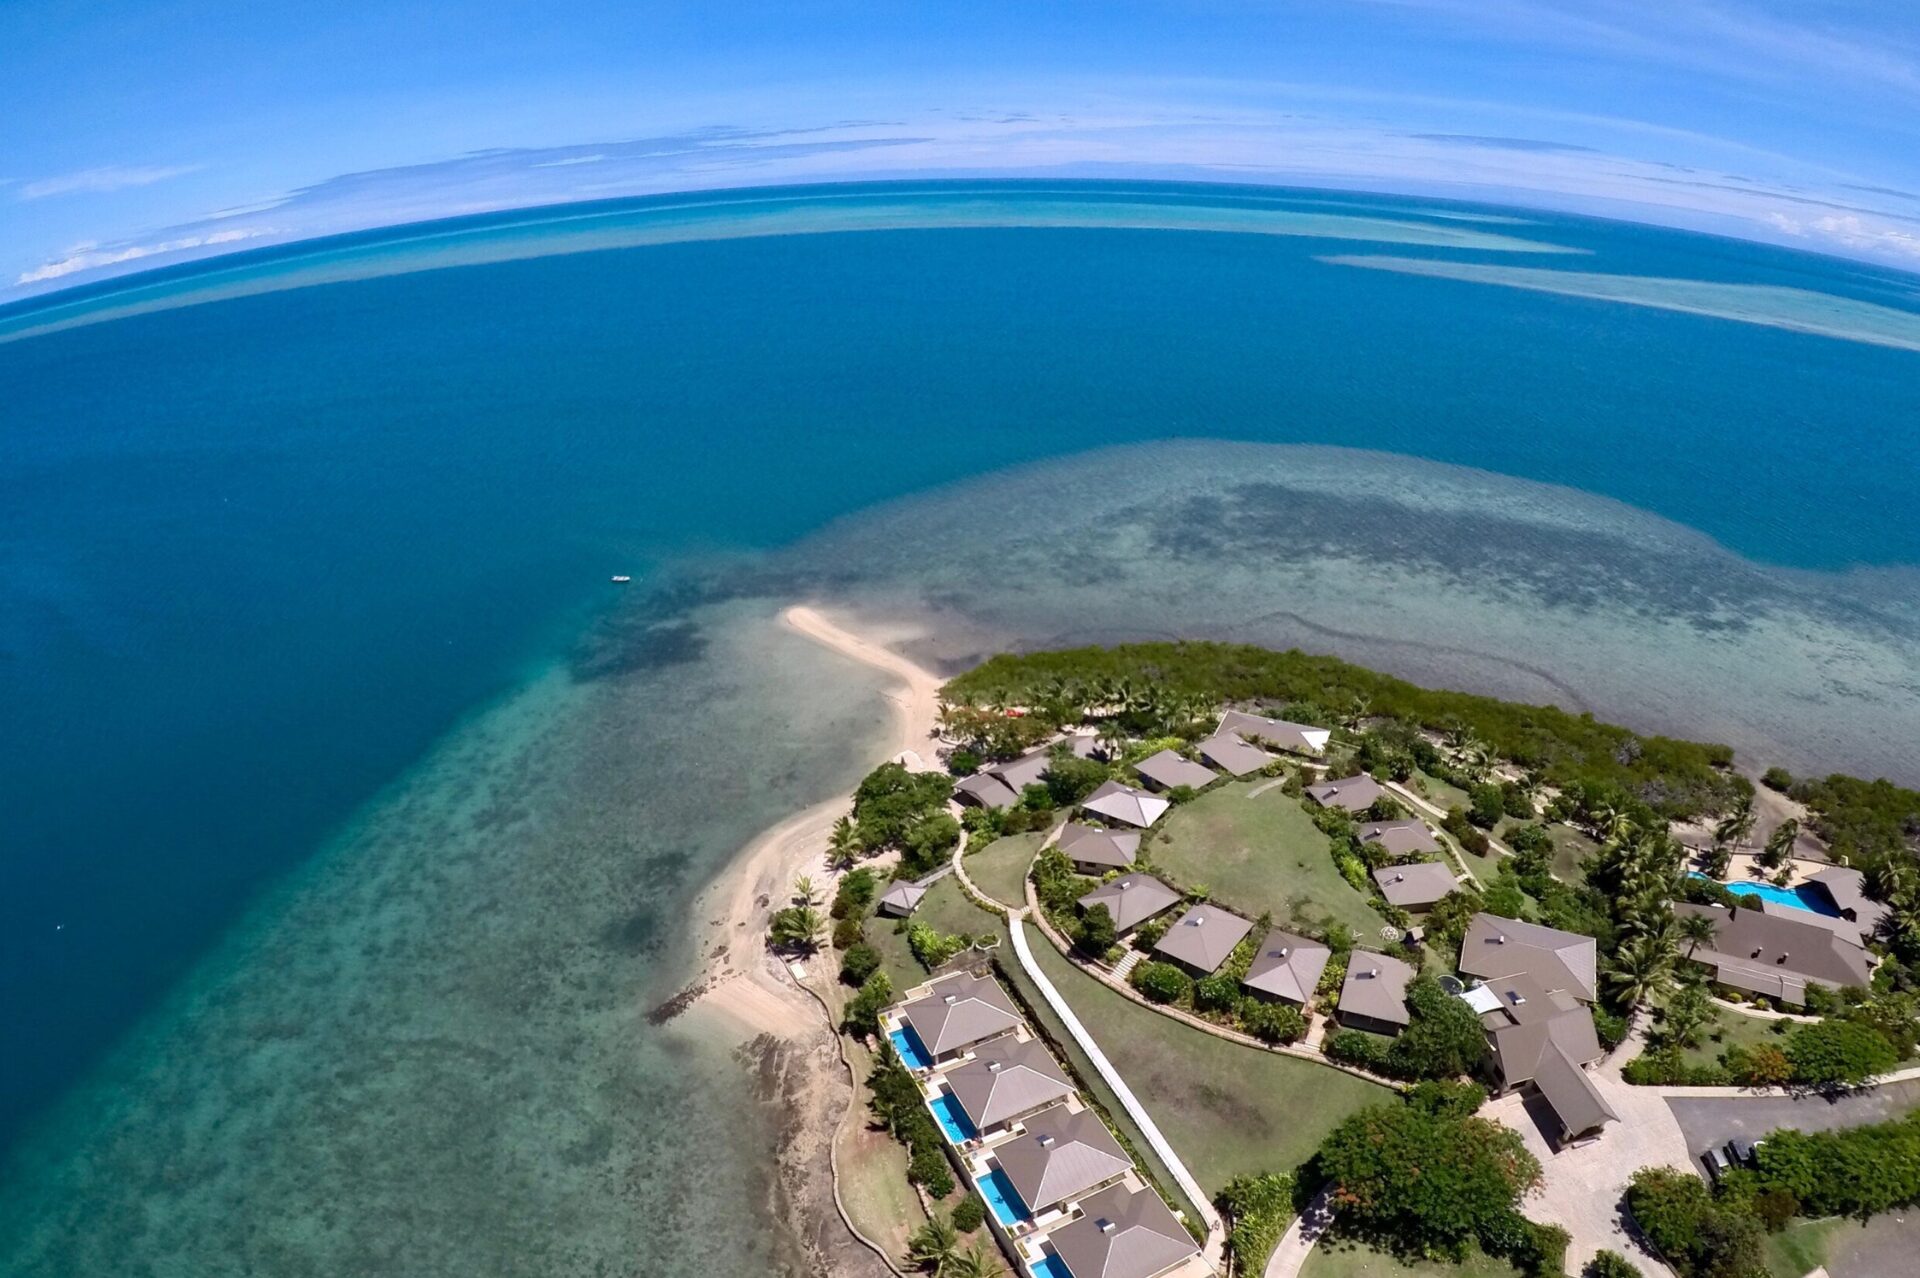 Volivoli Beach Resort in Fiji has the Best Diving